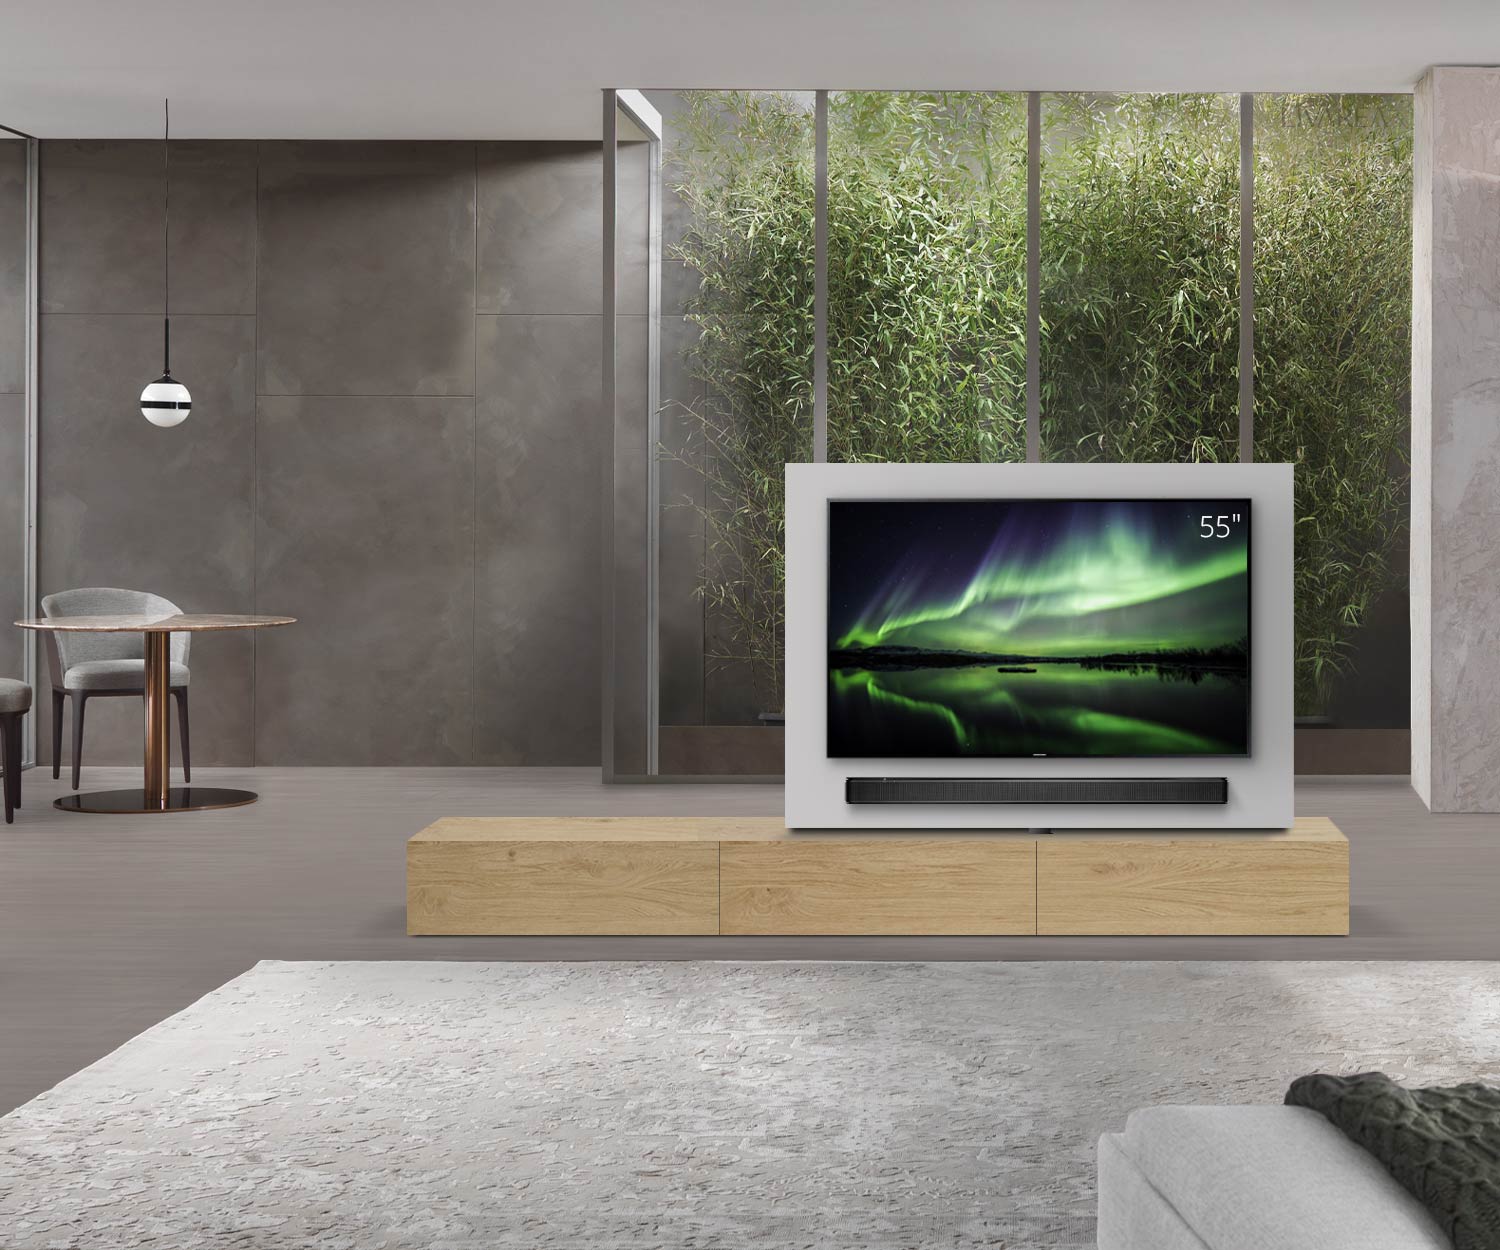 Livitalia Roto Design Lowboard Raumteiler mit drehbarem TV Paneel B180 65 H33 T47 EiHe B90li oBox